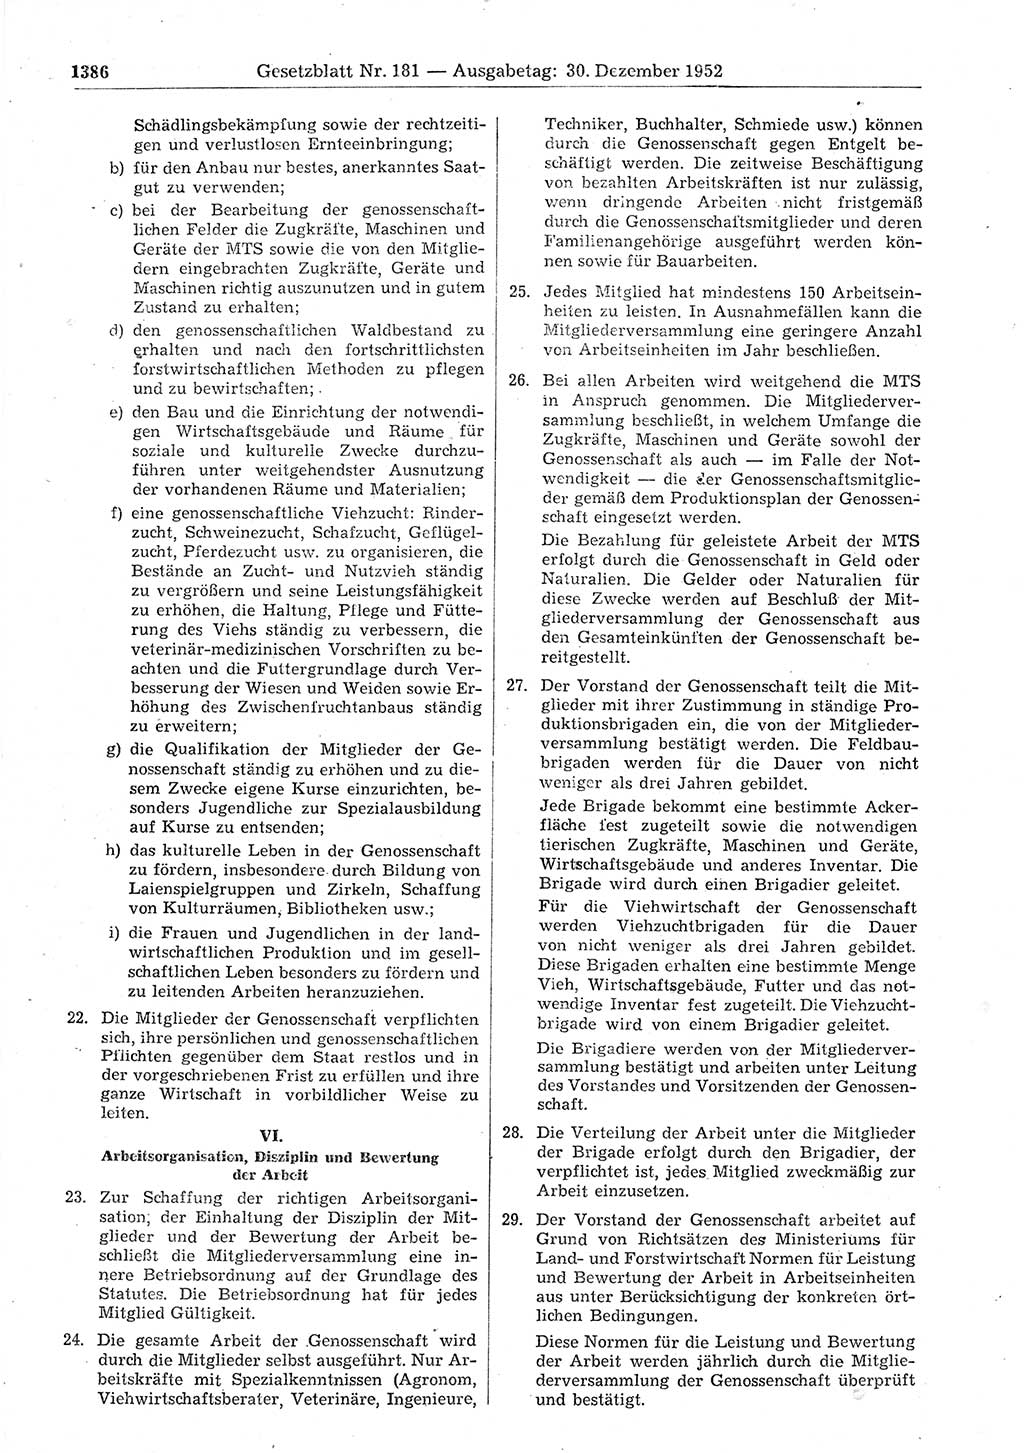 Gesetzblatt (GBl.) der Deutschen Demokratischen Republik (DDR) 1952, Seite 1386 (GBl. DDR 1952, S. 1386)